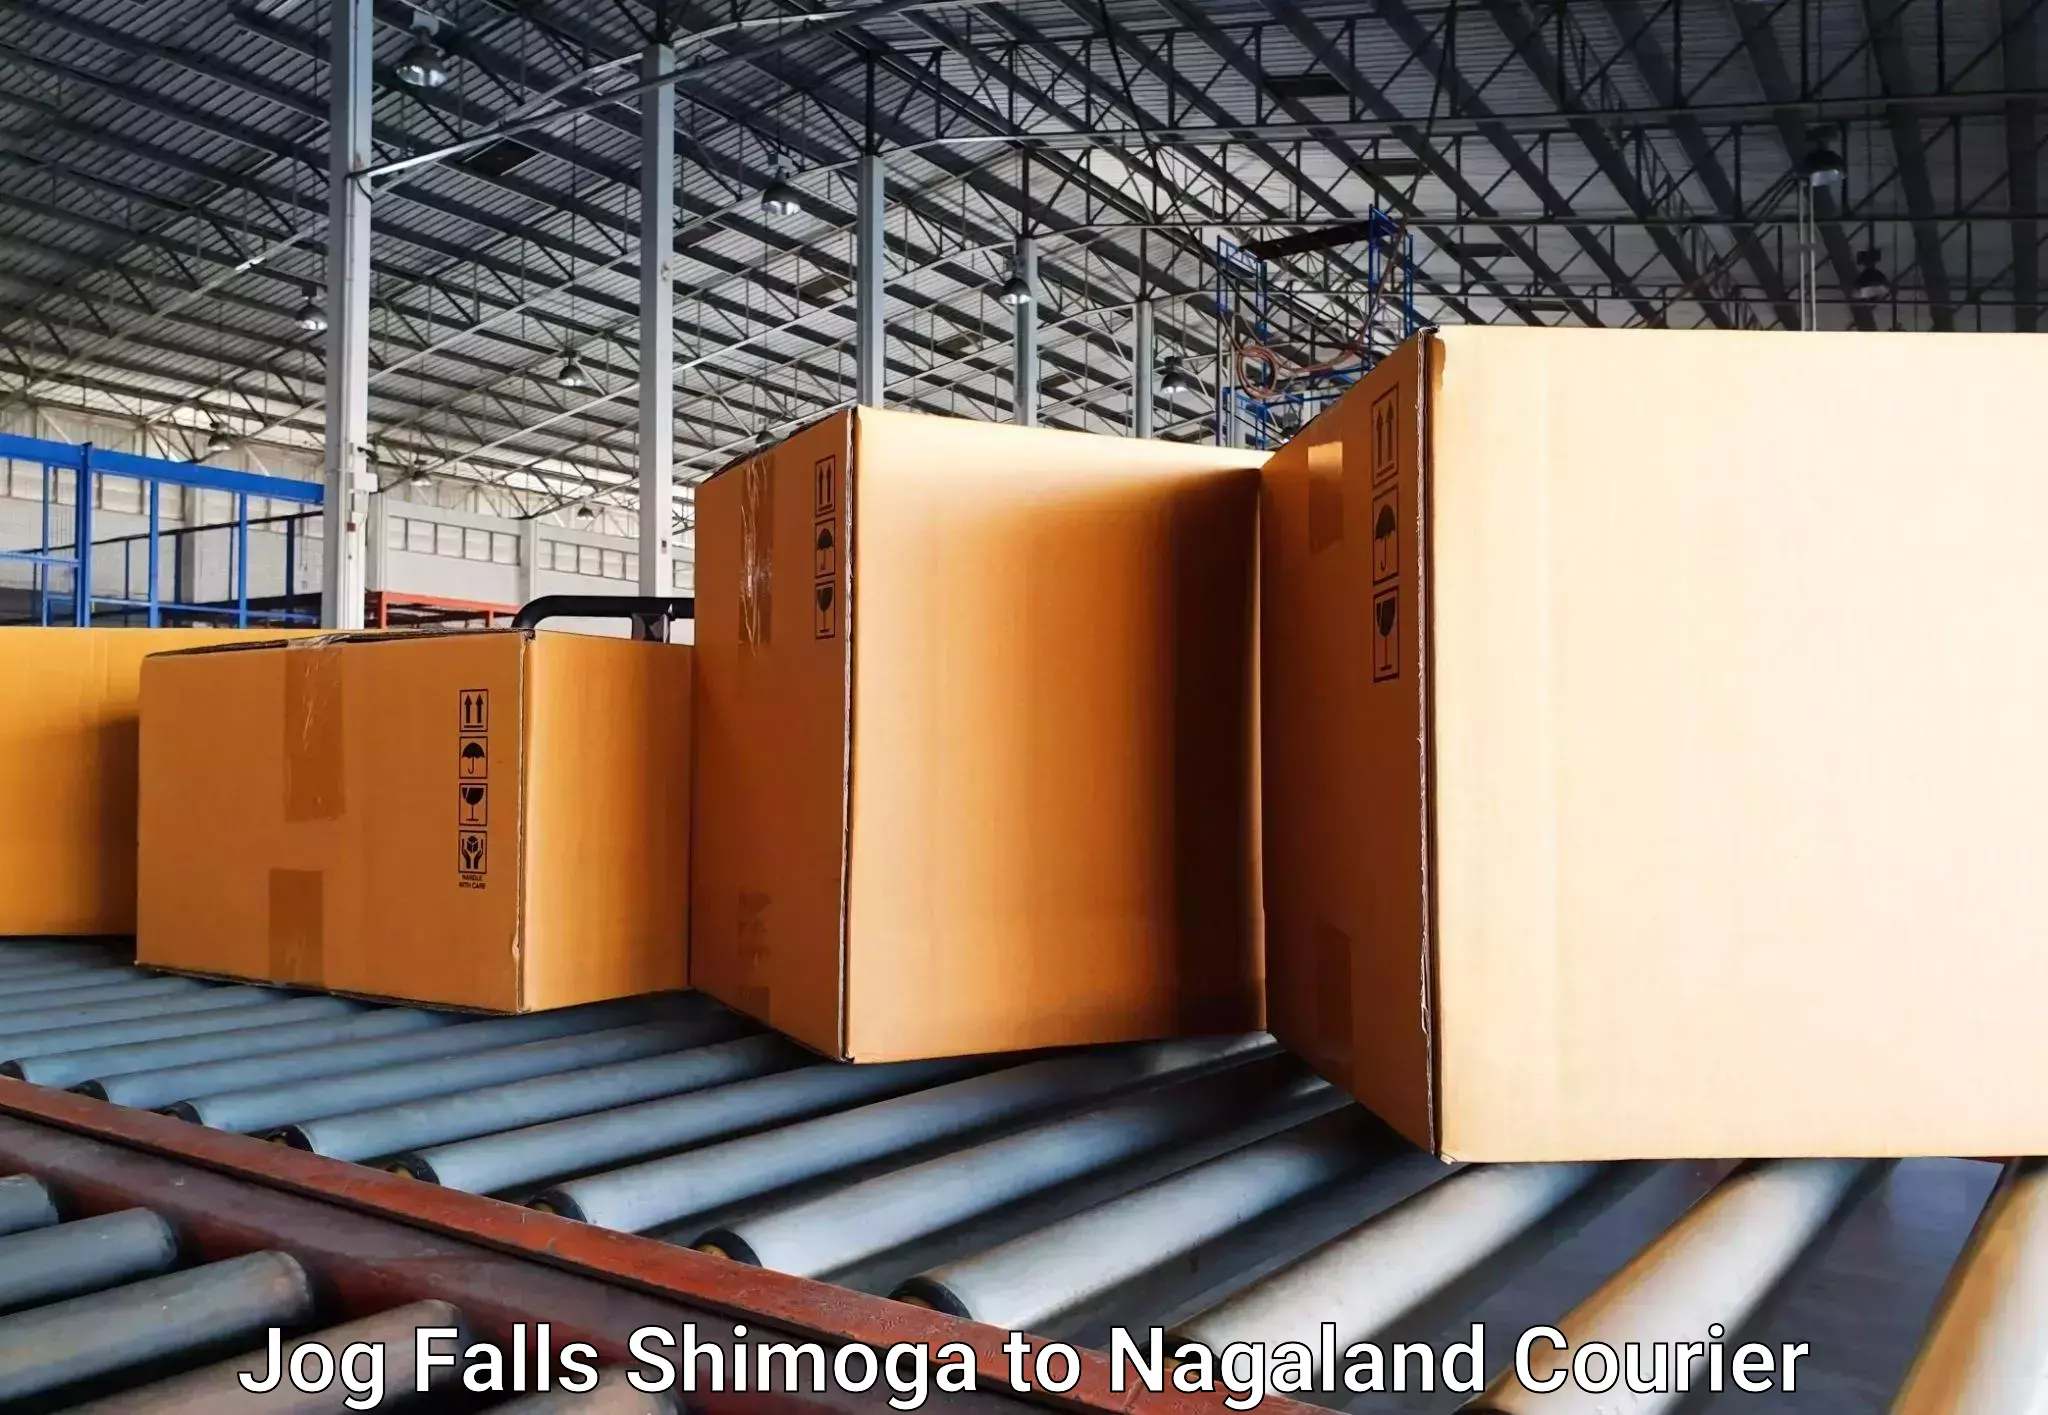 Luggage delivery optimization Jog Falls Shimoga to Nagaland